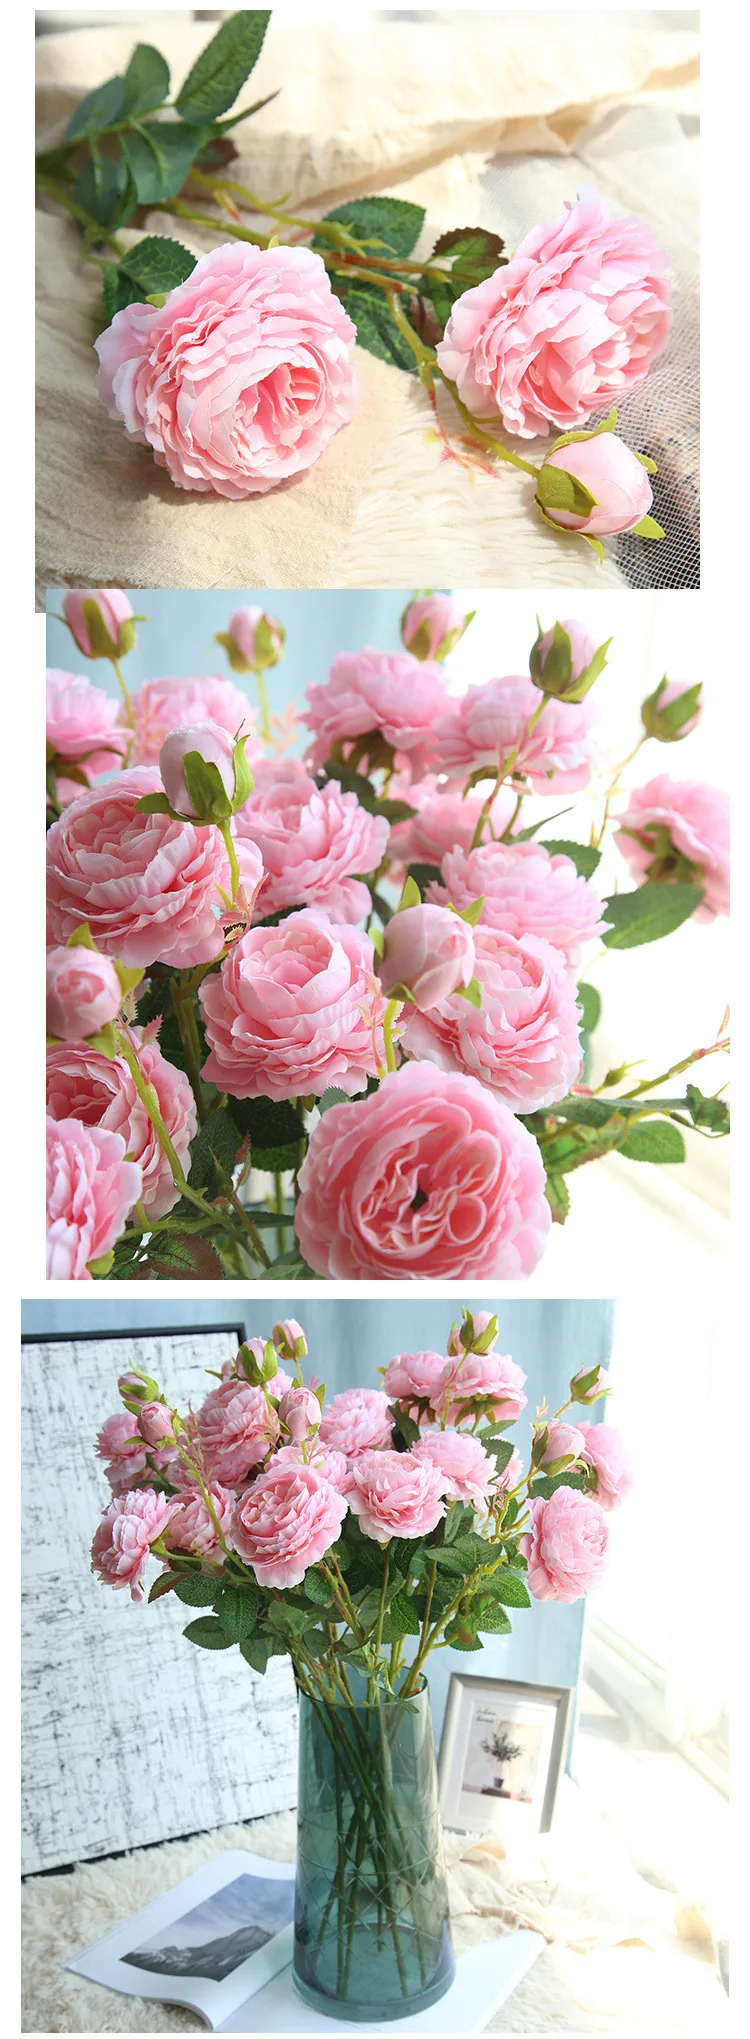 Западная роза Европейский ядро 3 головы Пион Искусственные цветы украшение дома Свадебные стены рождественские украшения поддельные цветы 1 шт